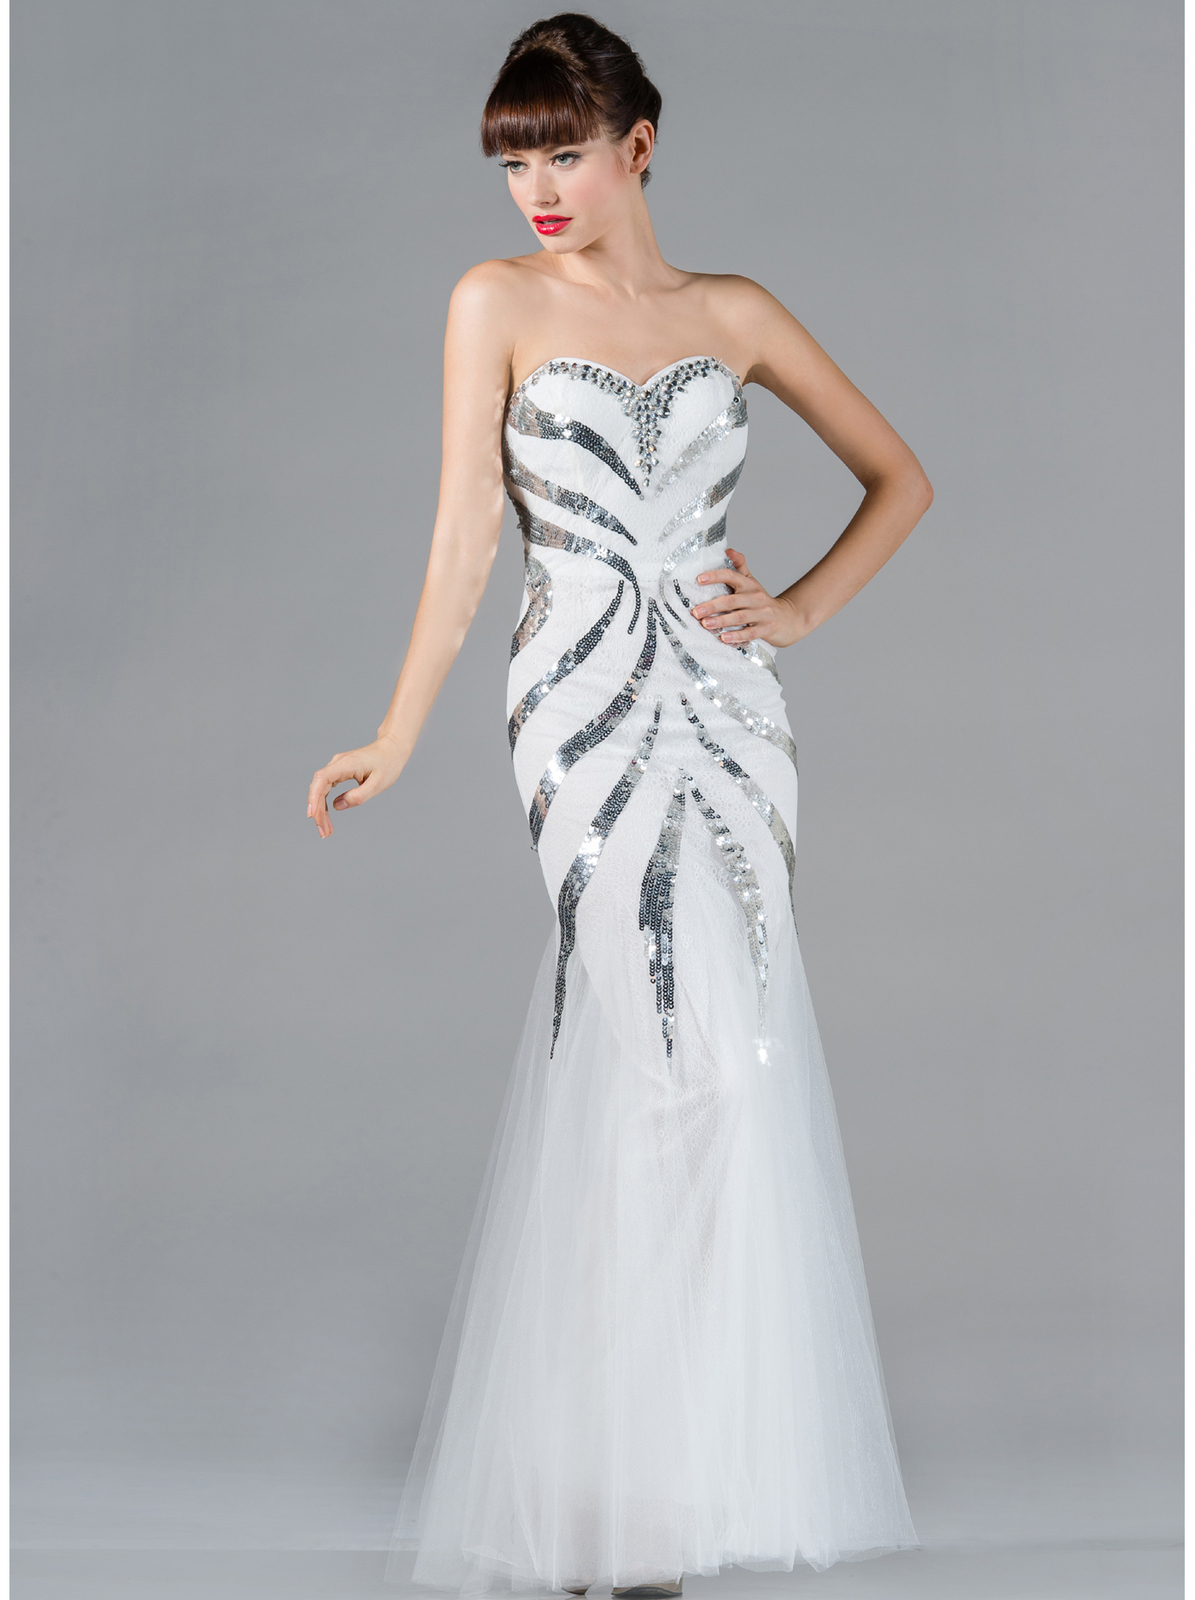 White Mermaid Prom Dress